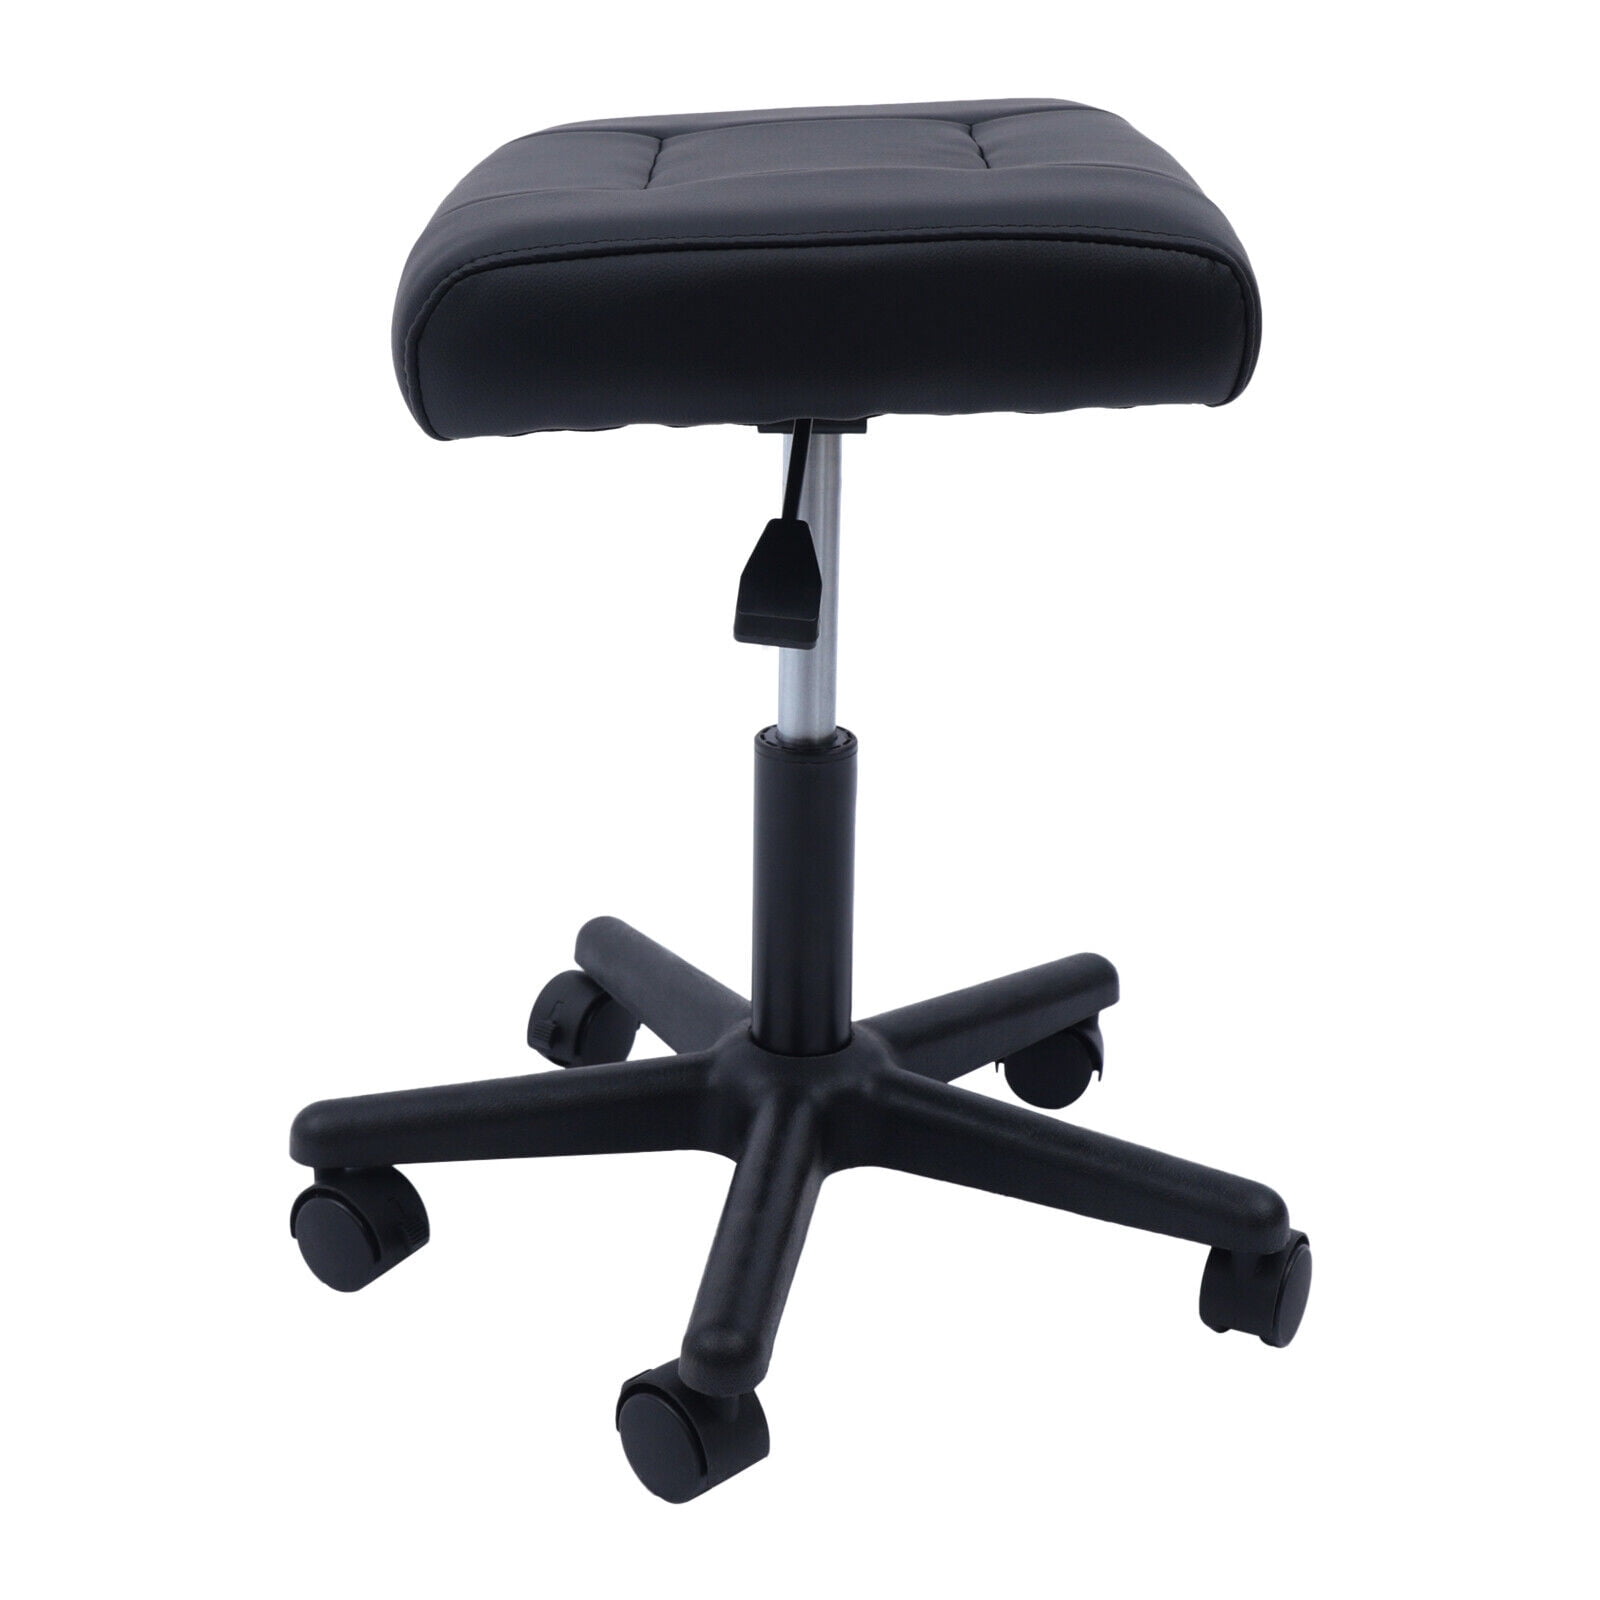 Footrest Under Desk Rolling Stool, Ergonomic Height Adjustable